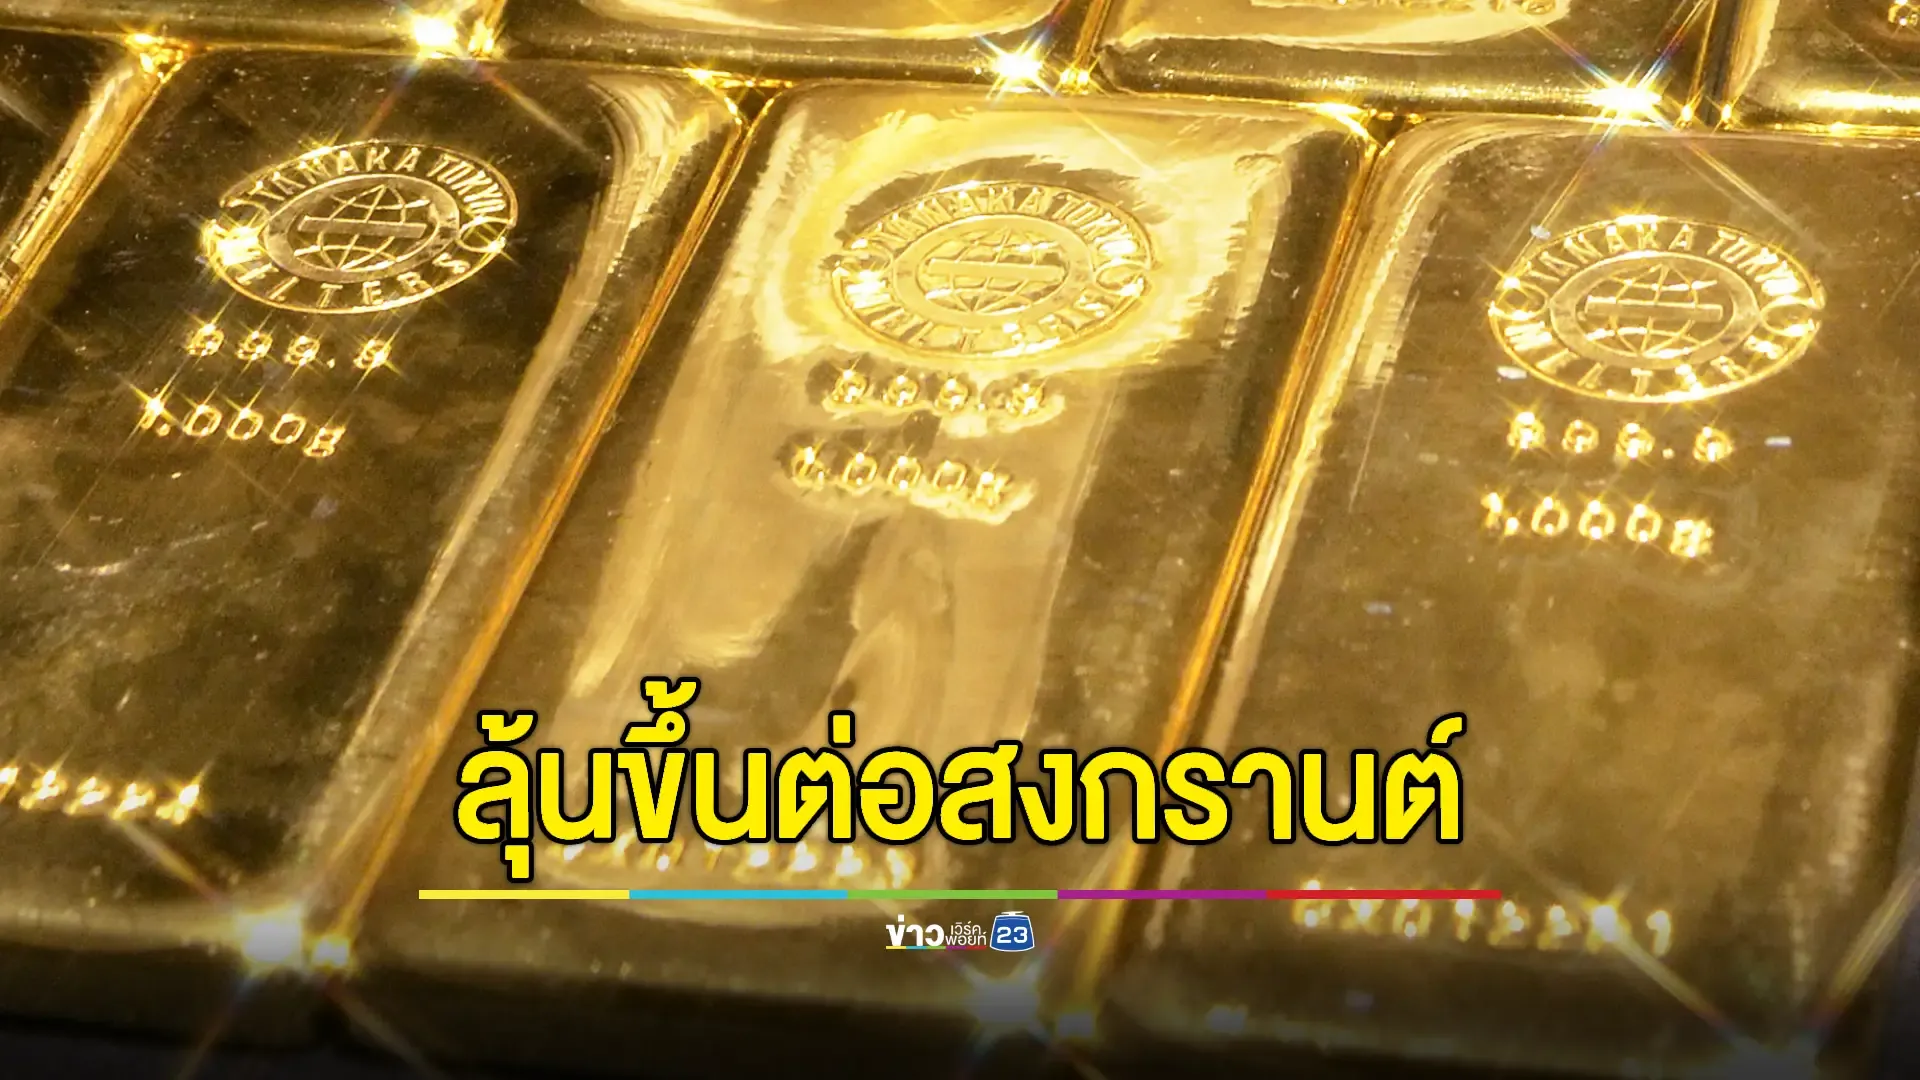 ราคาทองคำไทยวันนี้ ปรับขึ้น-ลง 7 ครั้ง รูปพรรณขายออกทะลุเพดานตามคาด